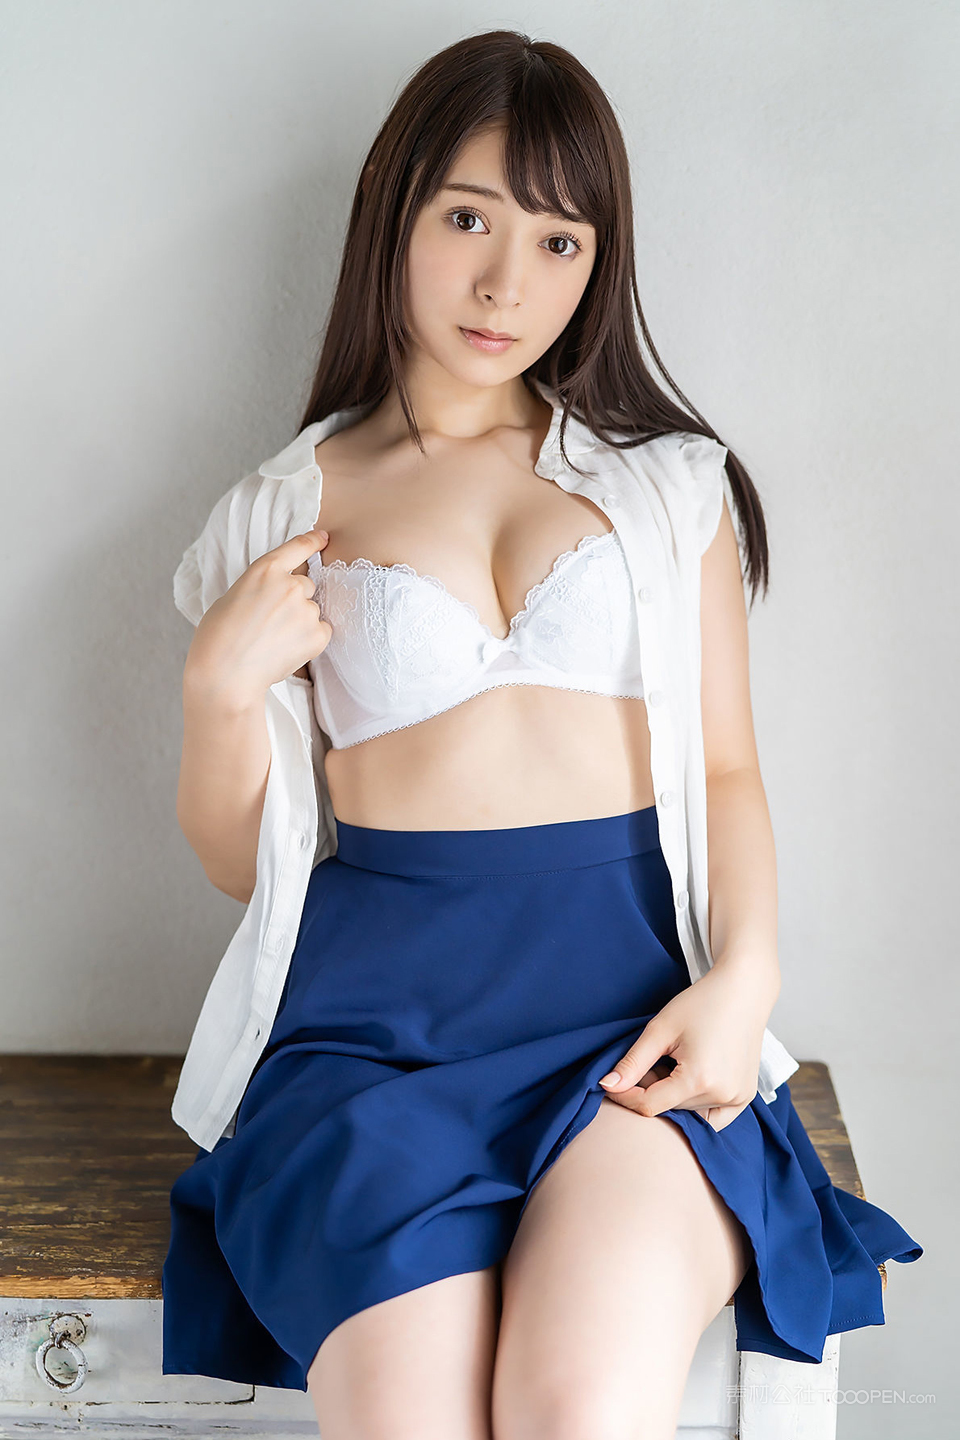 福利照 年轻小日本AV美少女美乳奶罩诱惑照